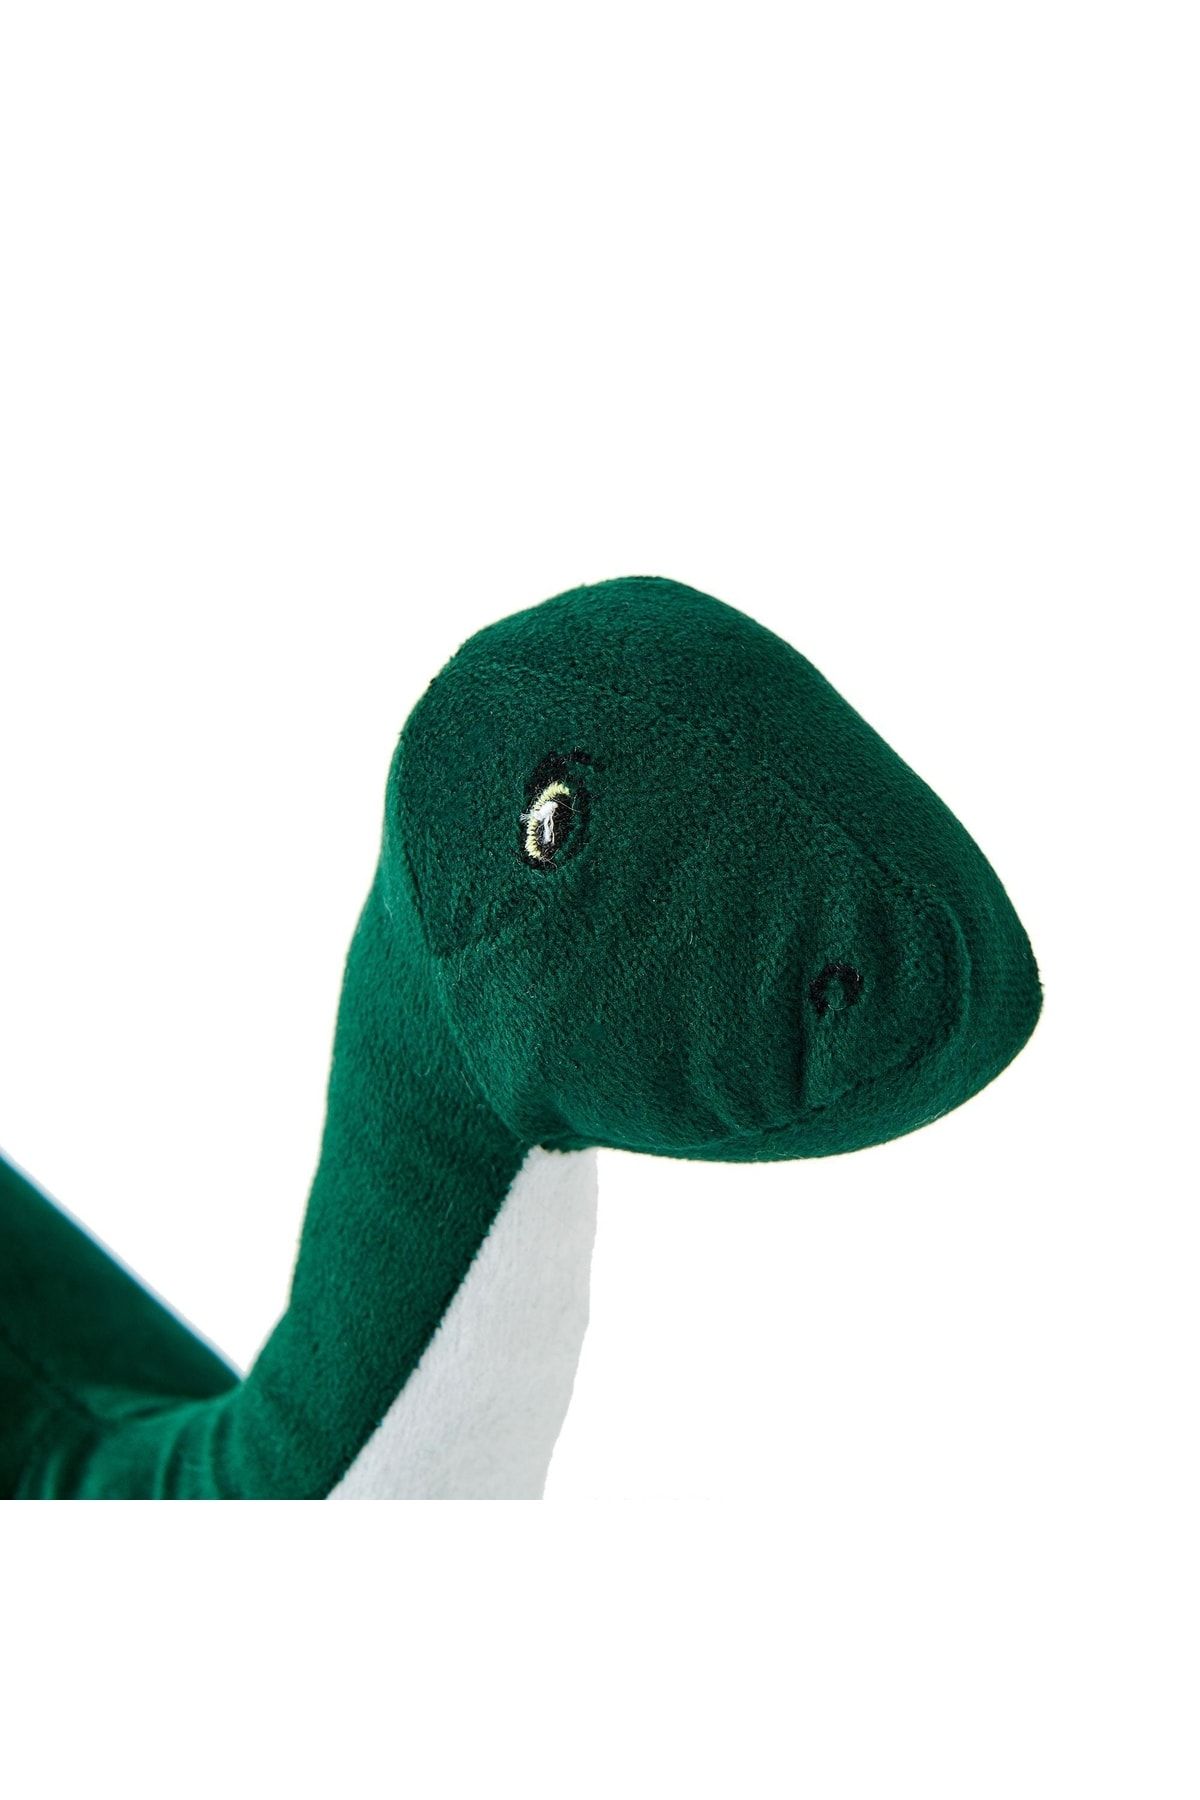 SHIVA Gift&More Sevimli Dinazor Figürlü Yastık - Yeşil Dinozor Peluş Oyuncak Uyku Ve Oyun Arkadaşı 55 Cm